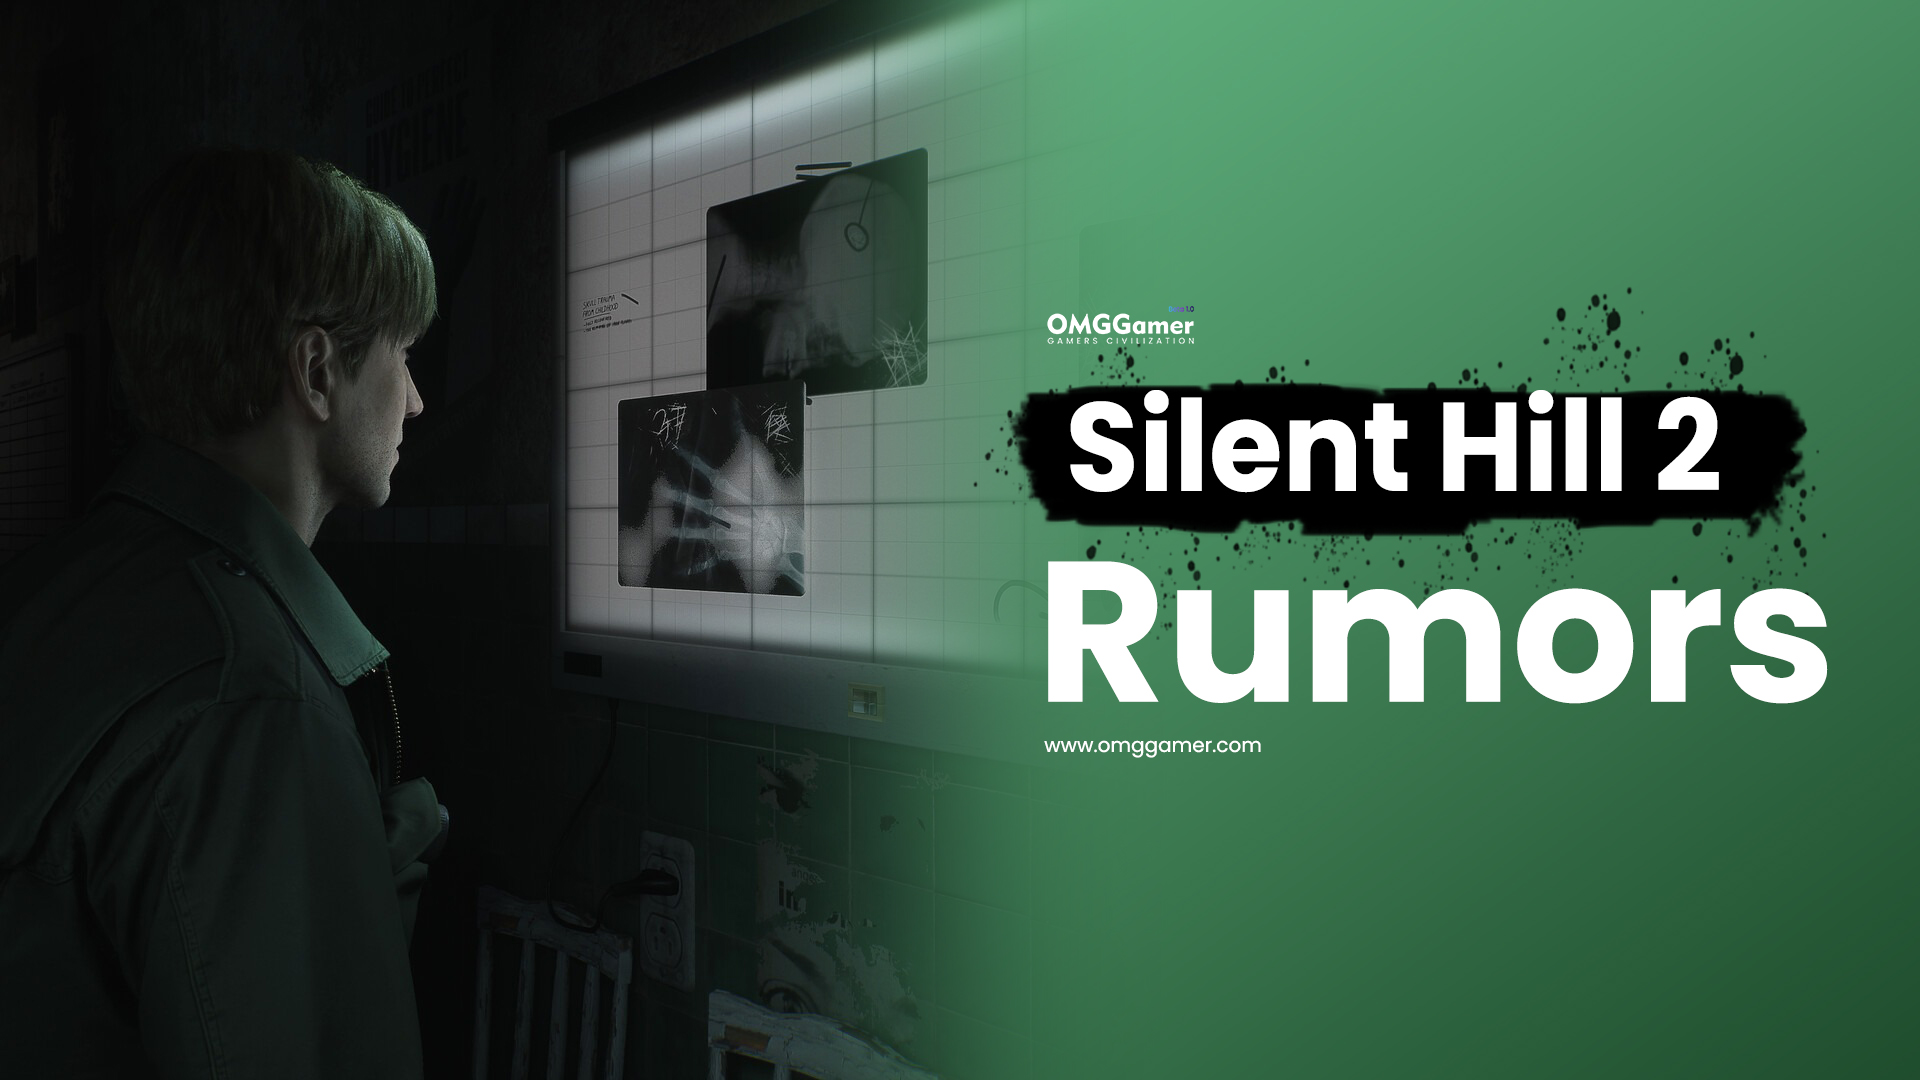 Silent Hill 2 Rumors